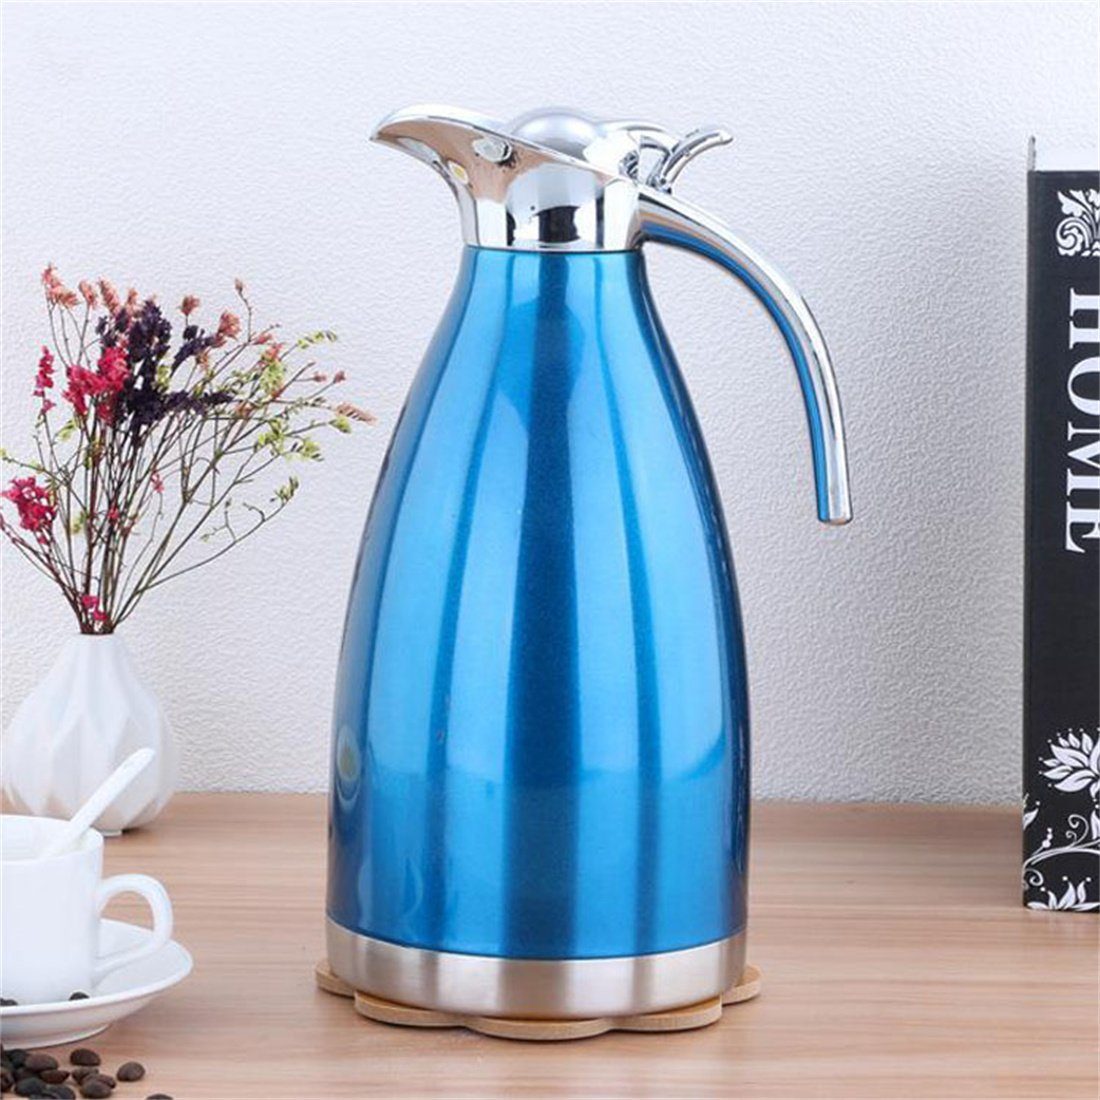 Kaffeekanne 2.0L DÖRÖY blau Isolierter Heißwasserkocher, Isolierkanne Edelstahl-Wasserkocher,